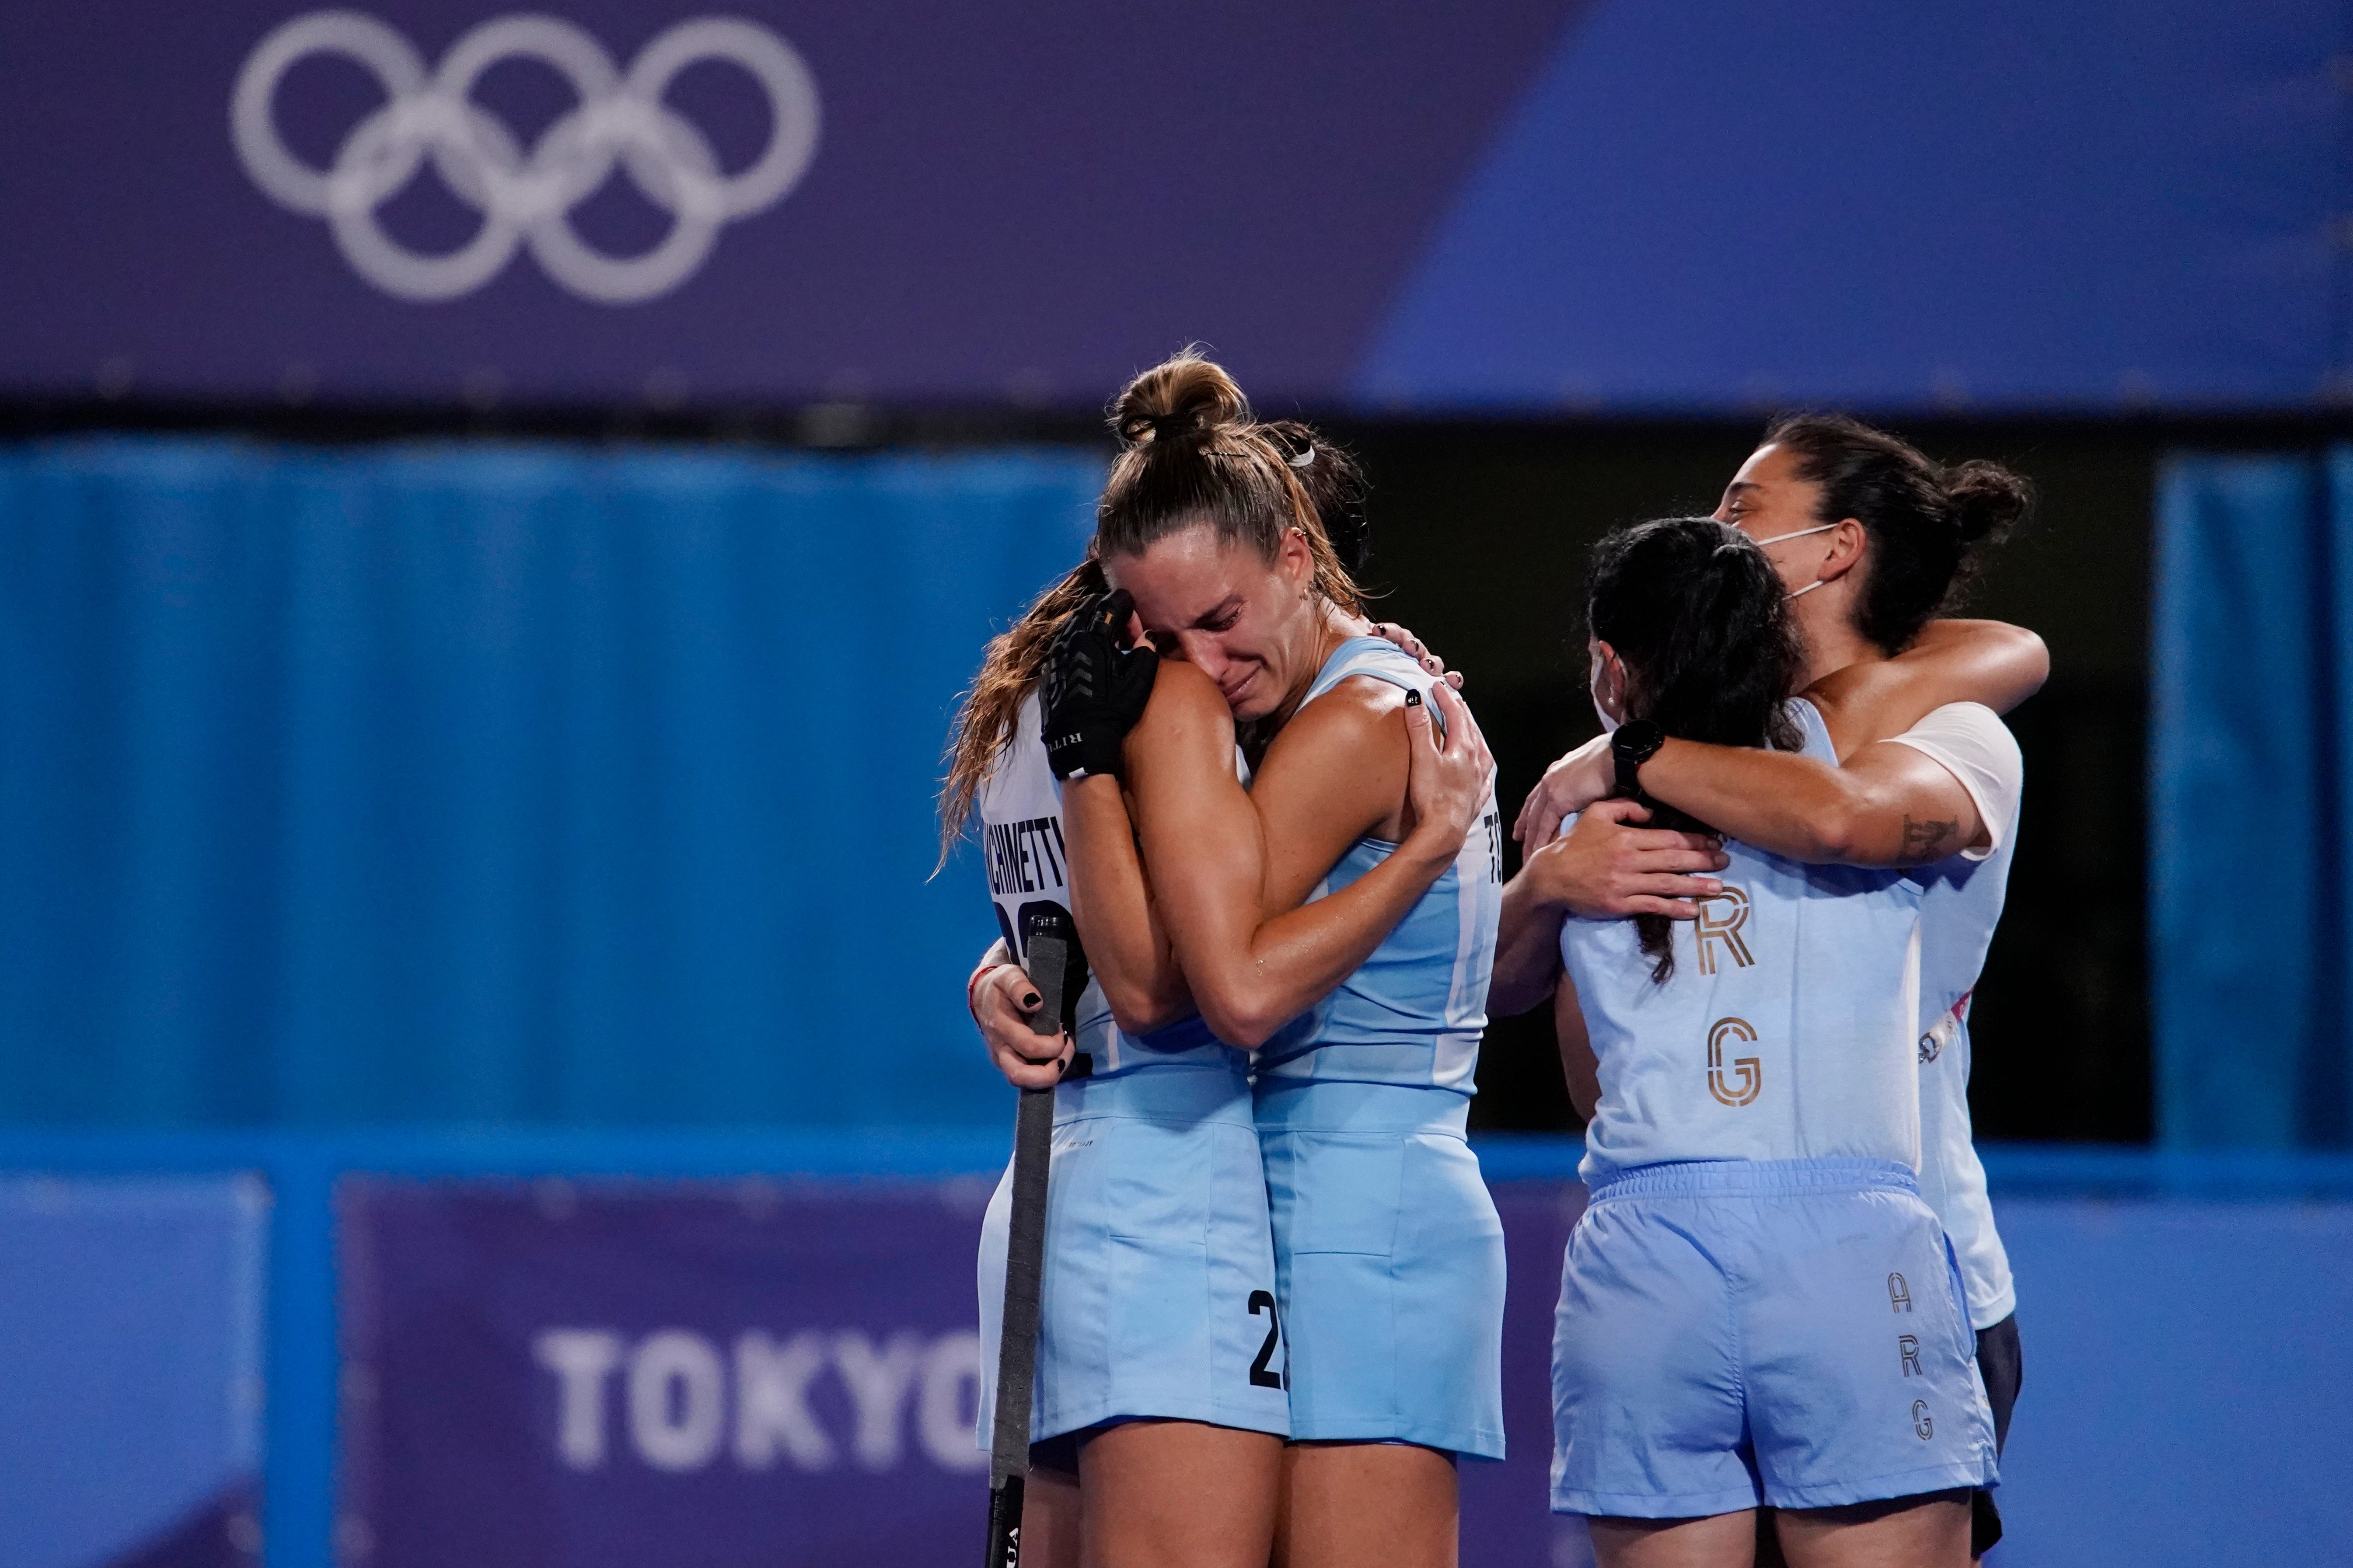 Jugadoras argentinas reaccionan tras perder ante Holanda en el partido de hockey sobre césped femenino por la medalla de oro en los Juegos Olímpicos de Verano de 2020, el viernes 6 de agosto de 2021 en Tokio, Japón.